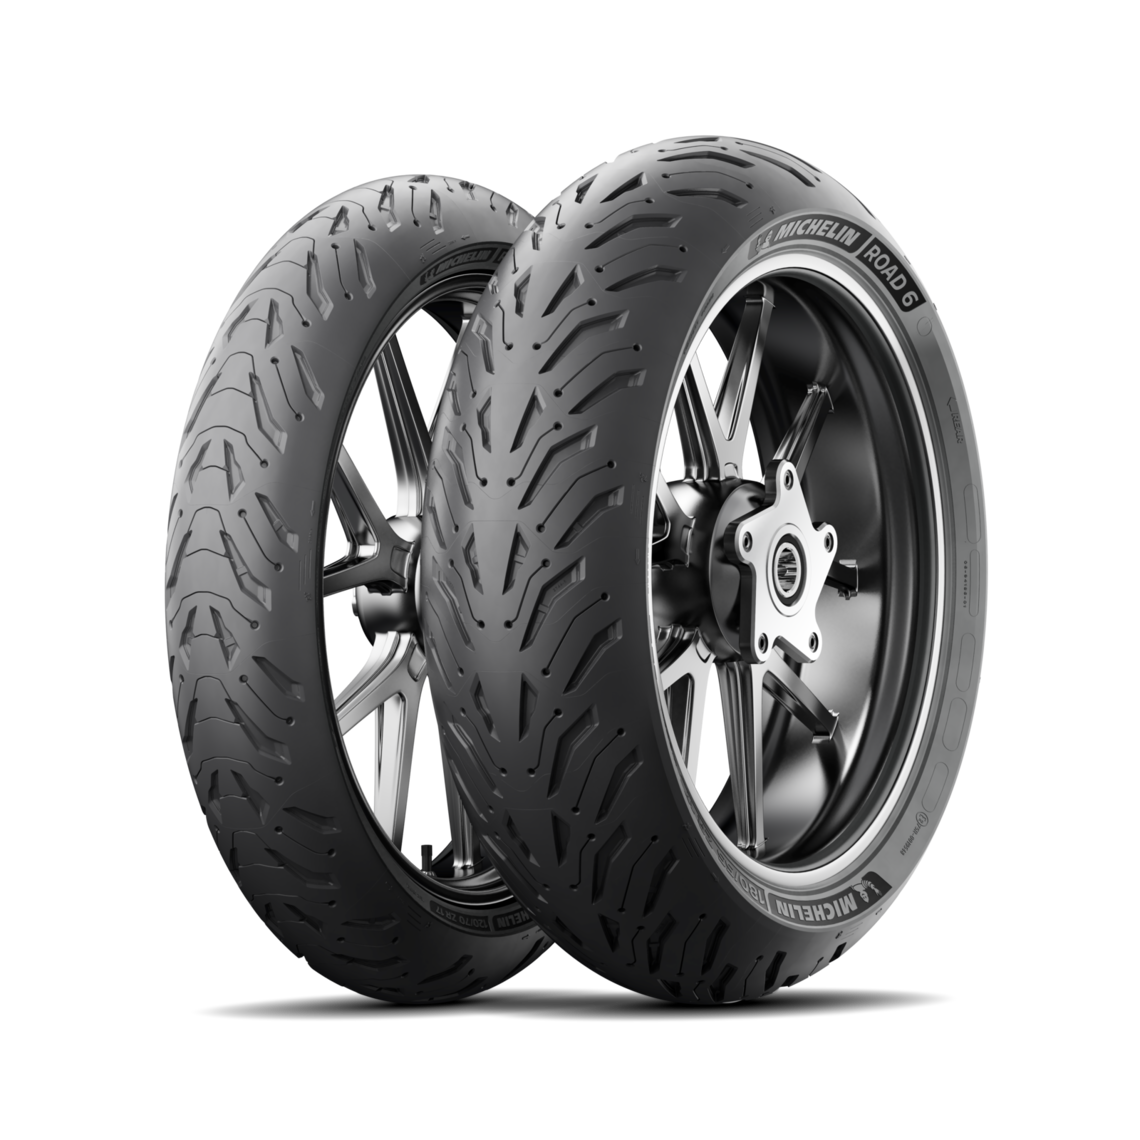 Gomme Nuove Michelin 180/55 R17 73W ROAD 6 GT pneumatici nuovi Estivo